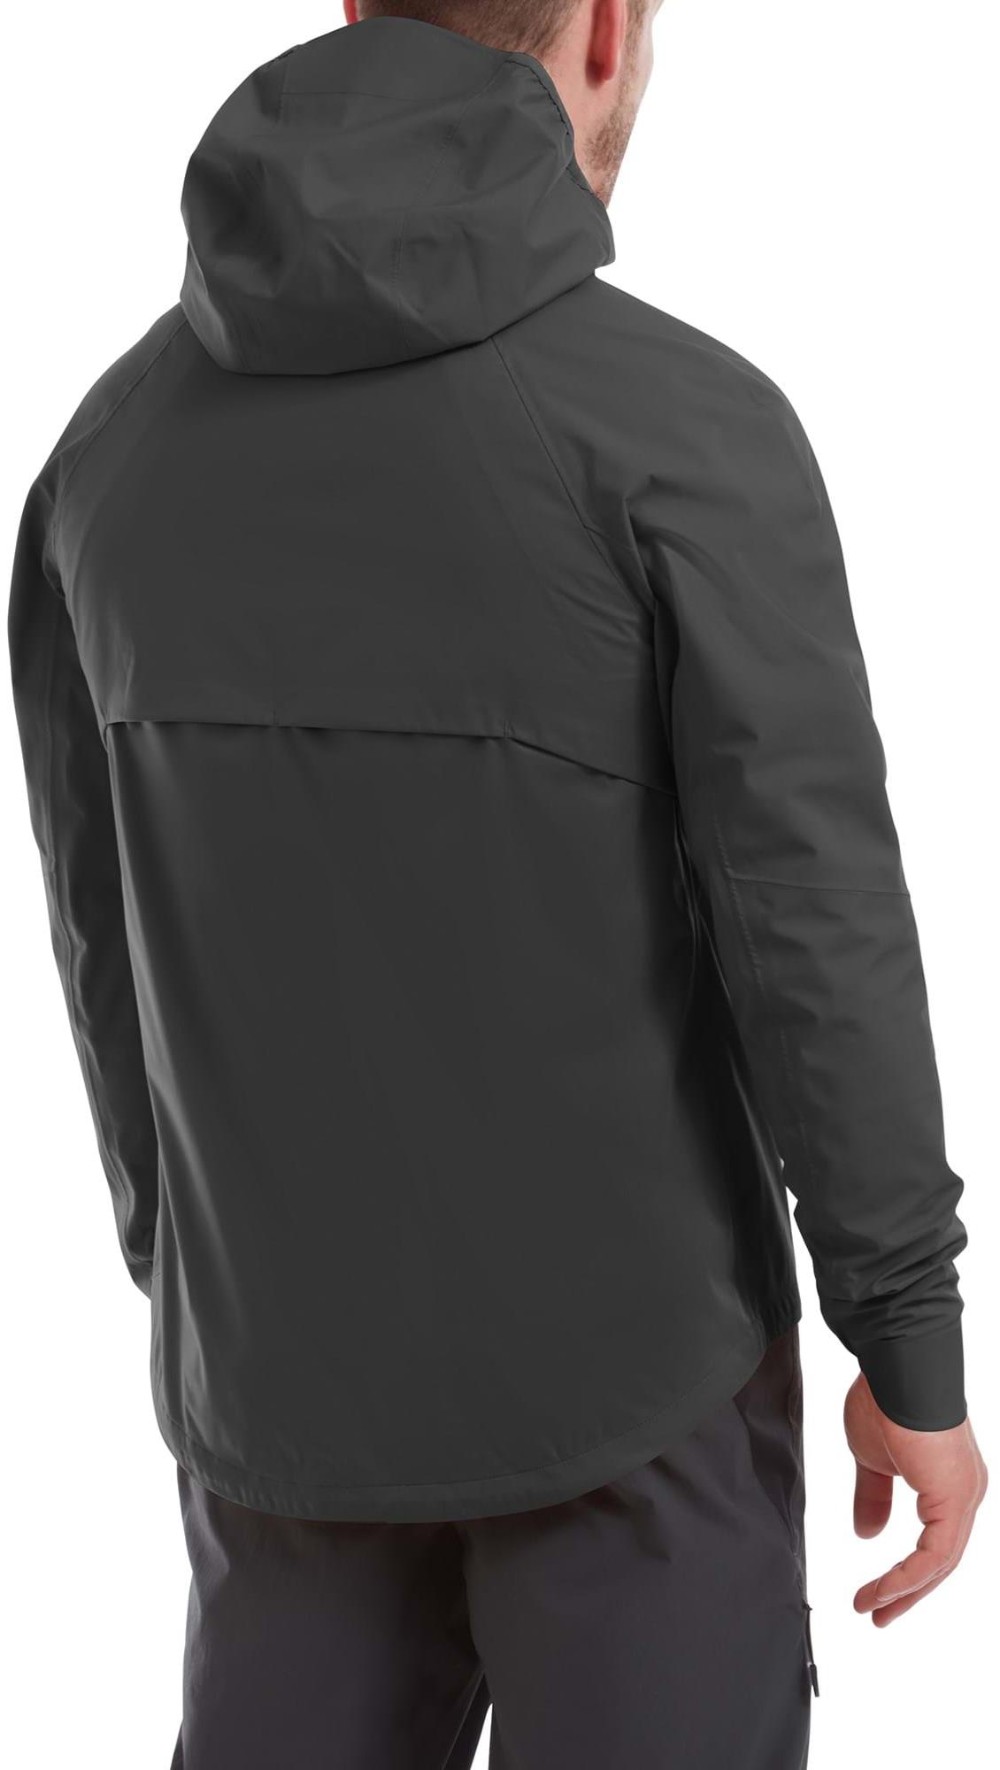 Esker Waterproof Packable Womens Jacket image 1